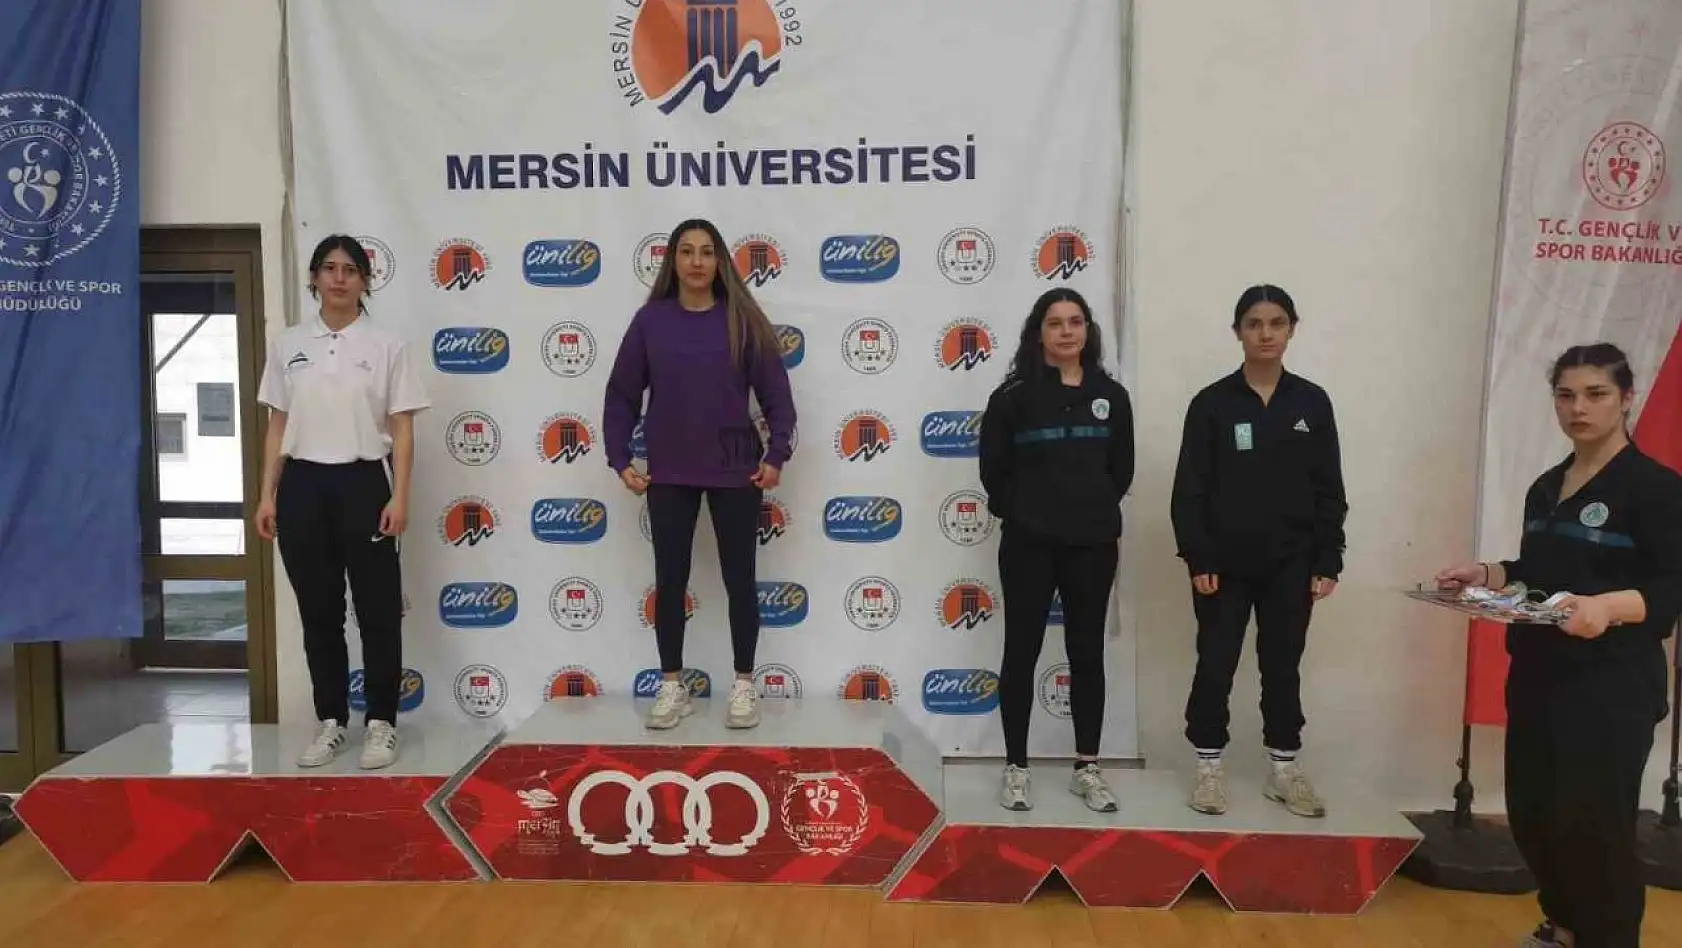 Başarılı sporcu Atalay, Türkiye Şampiyonu oldu